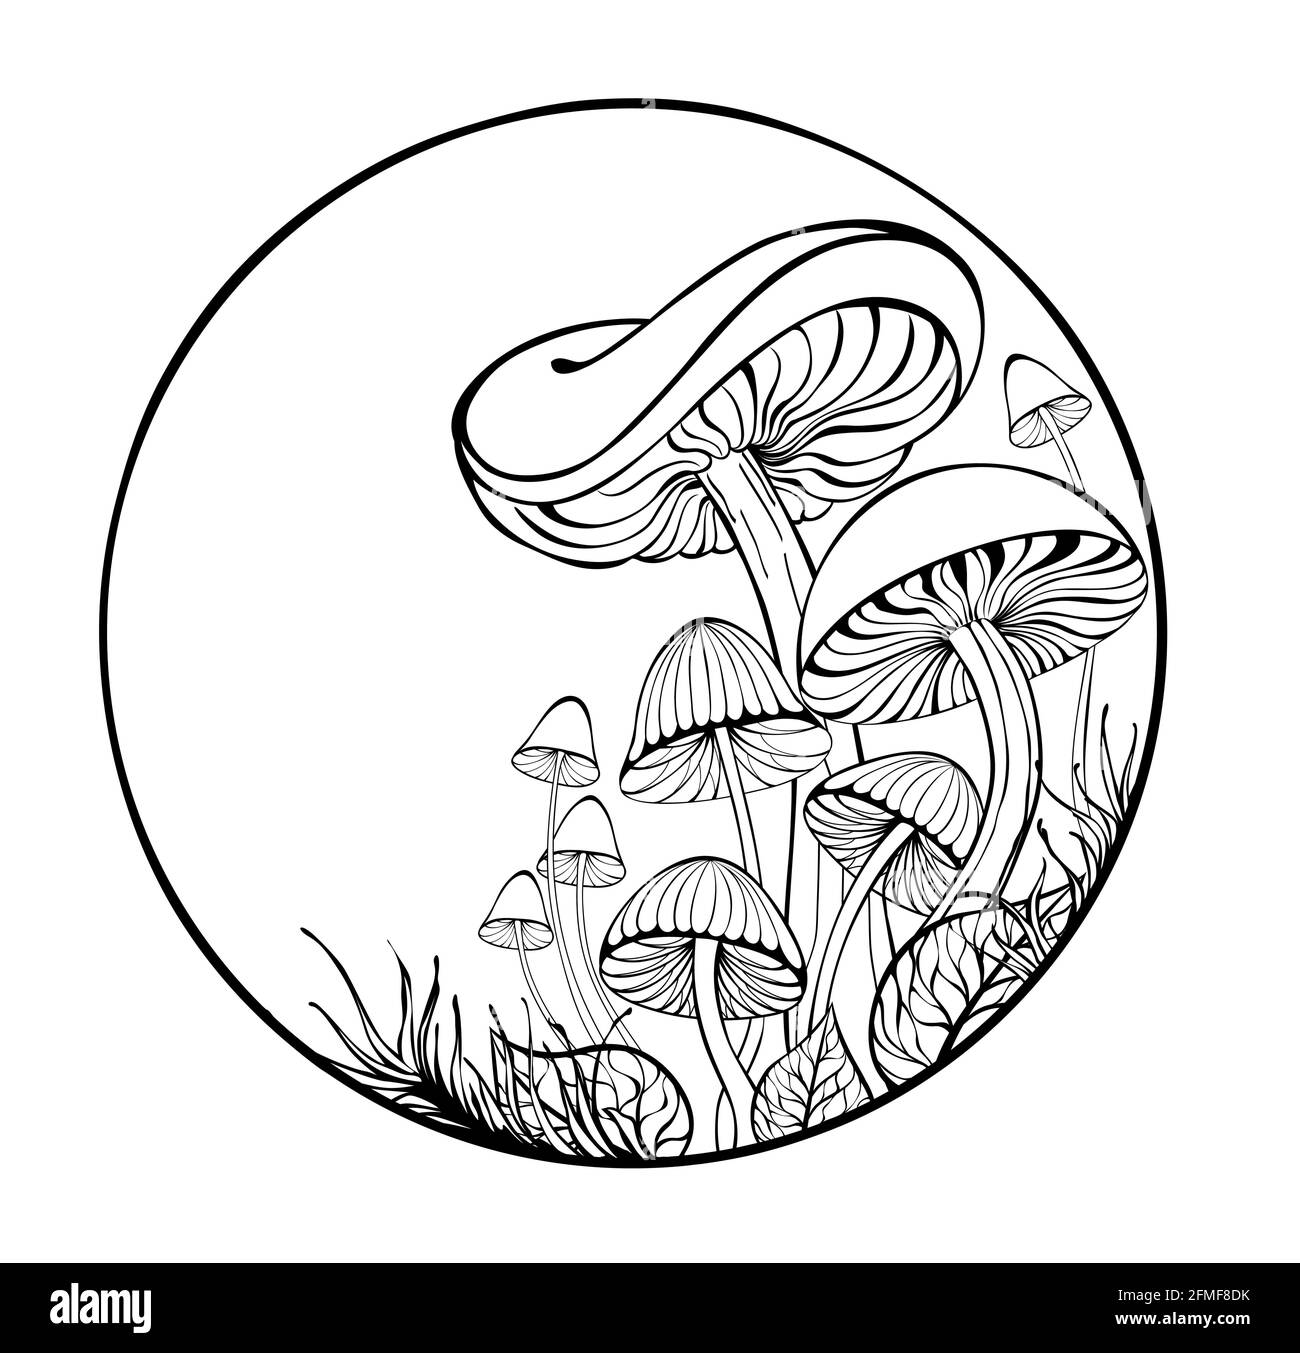 Dessin artistique, contour, silhouette, champignons stylisés et mousse sur fond blanc Illustration de Vecteur